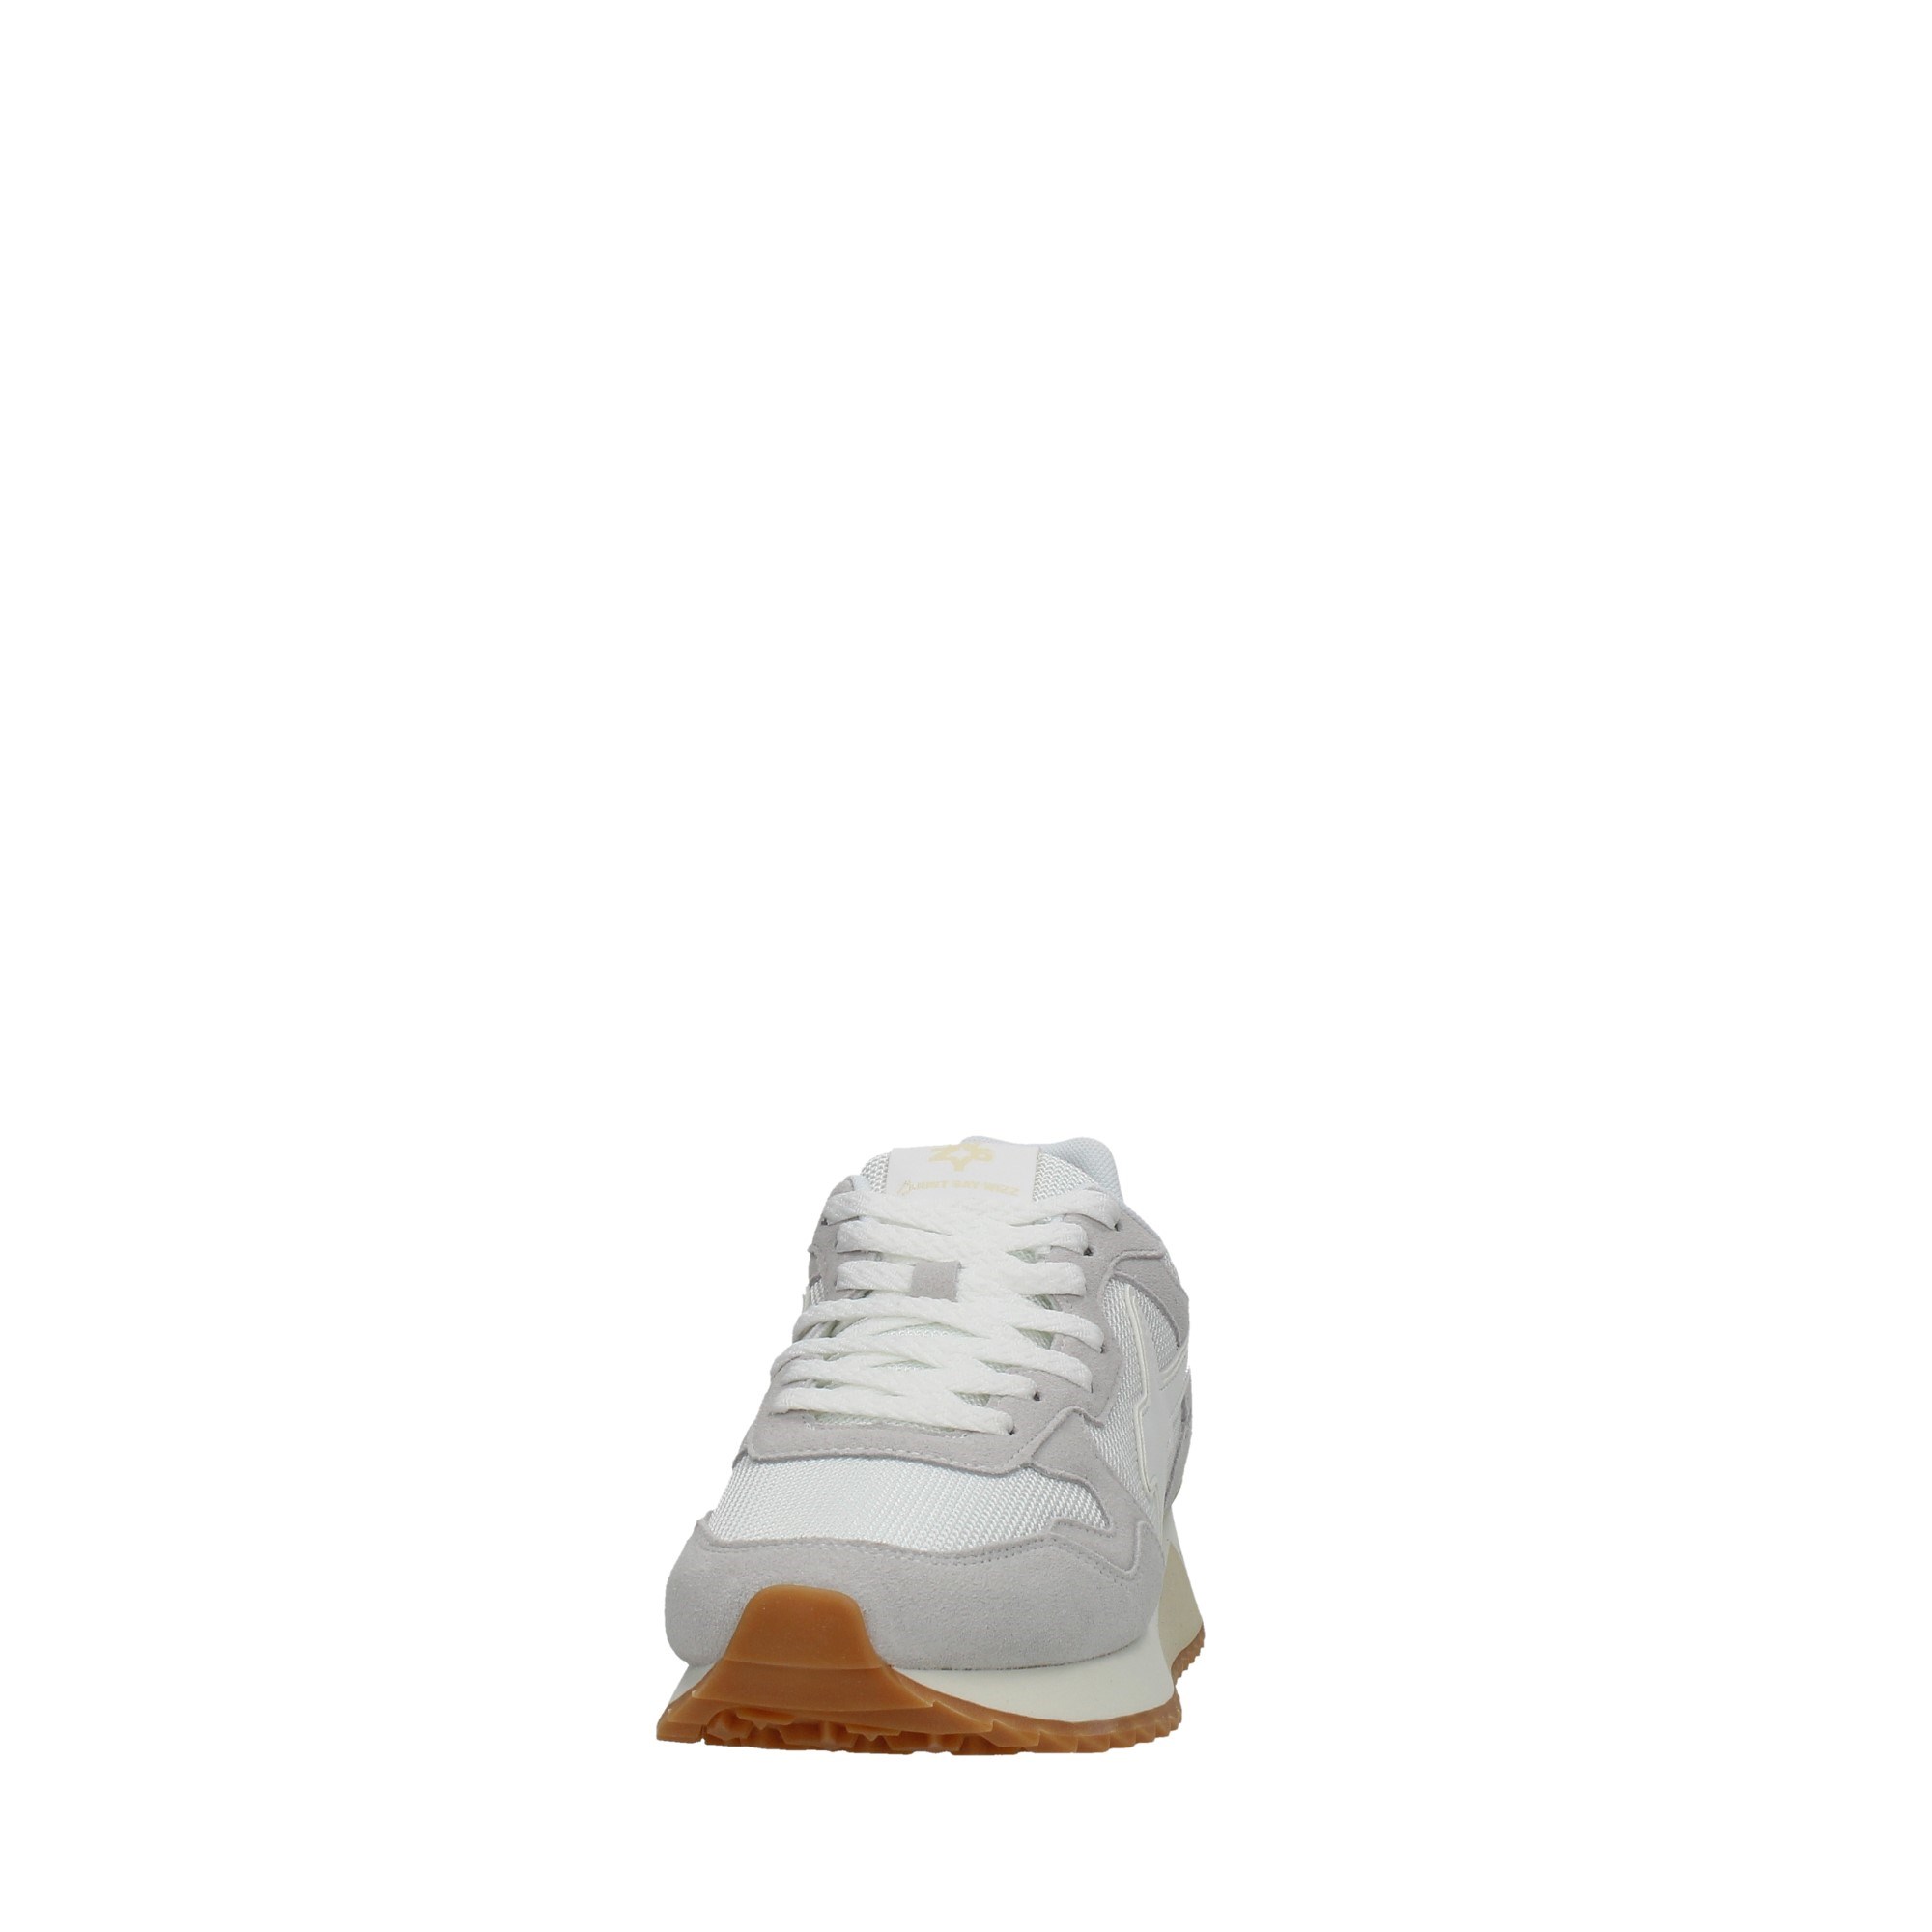 W6yz Scarpe Uomo Sneakers Bianco YAK-M 1N21